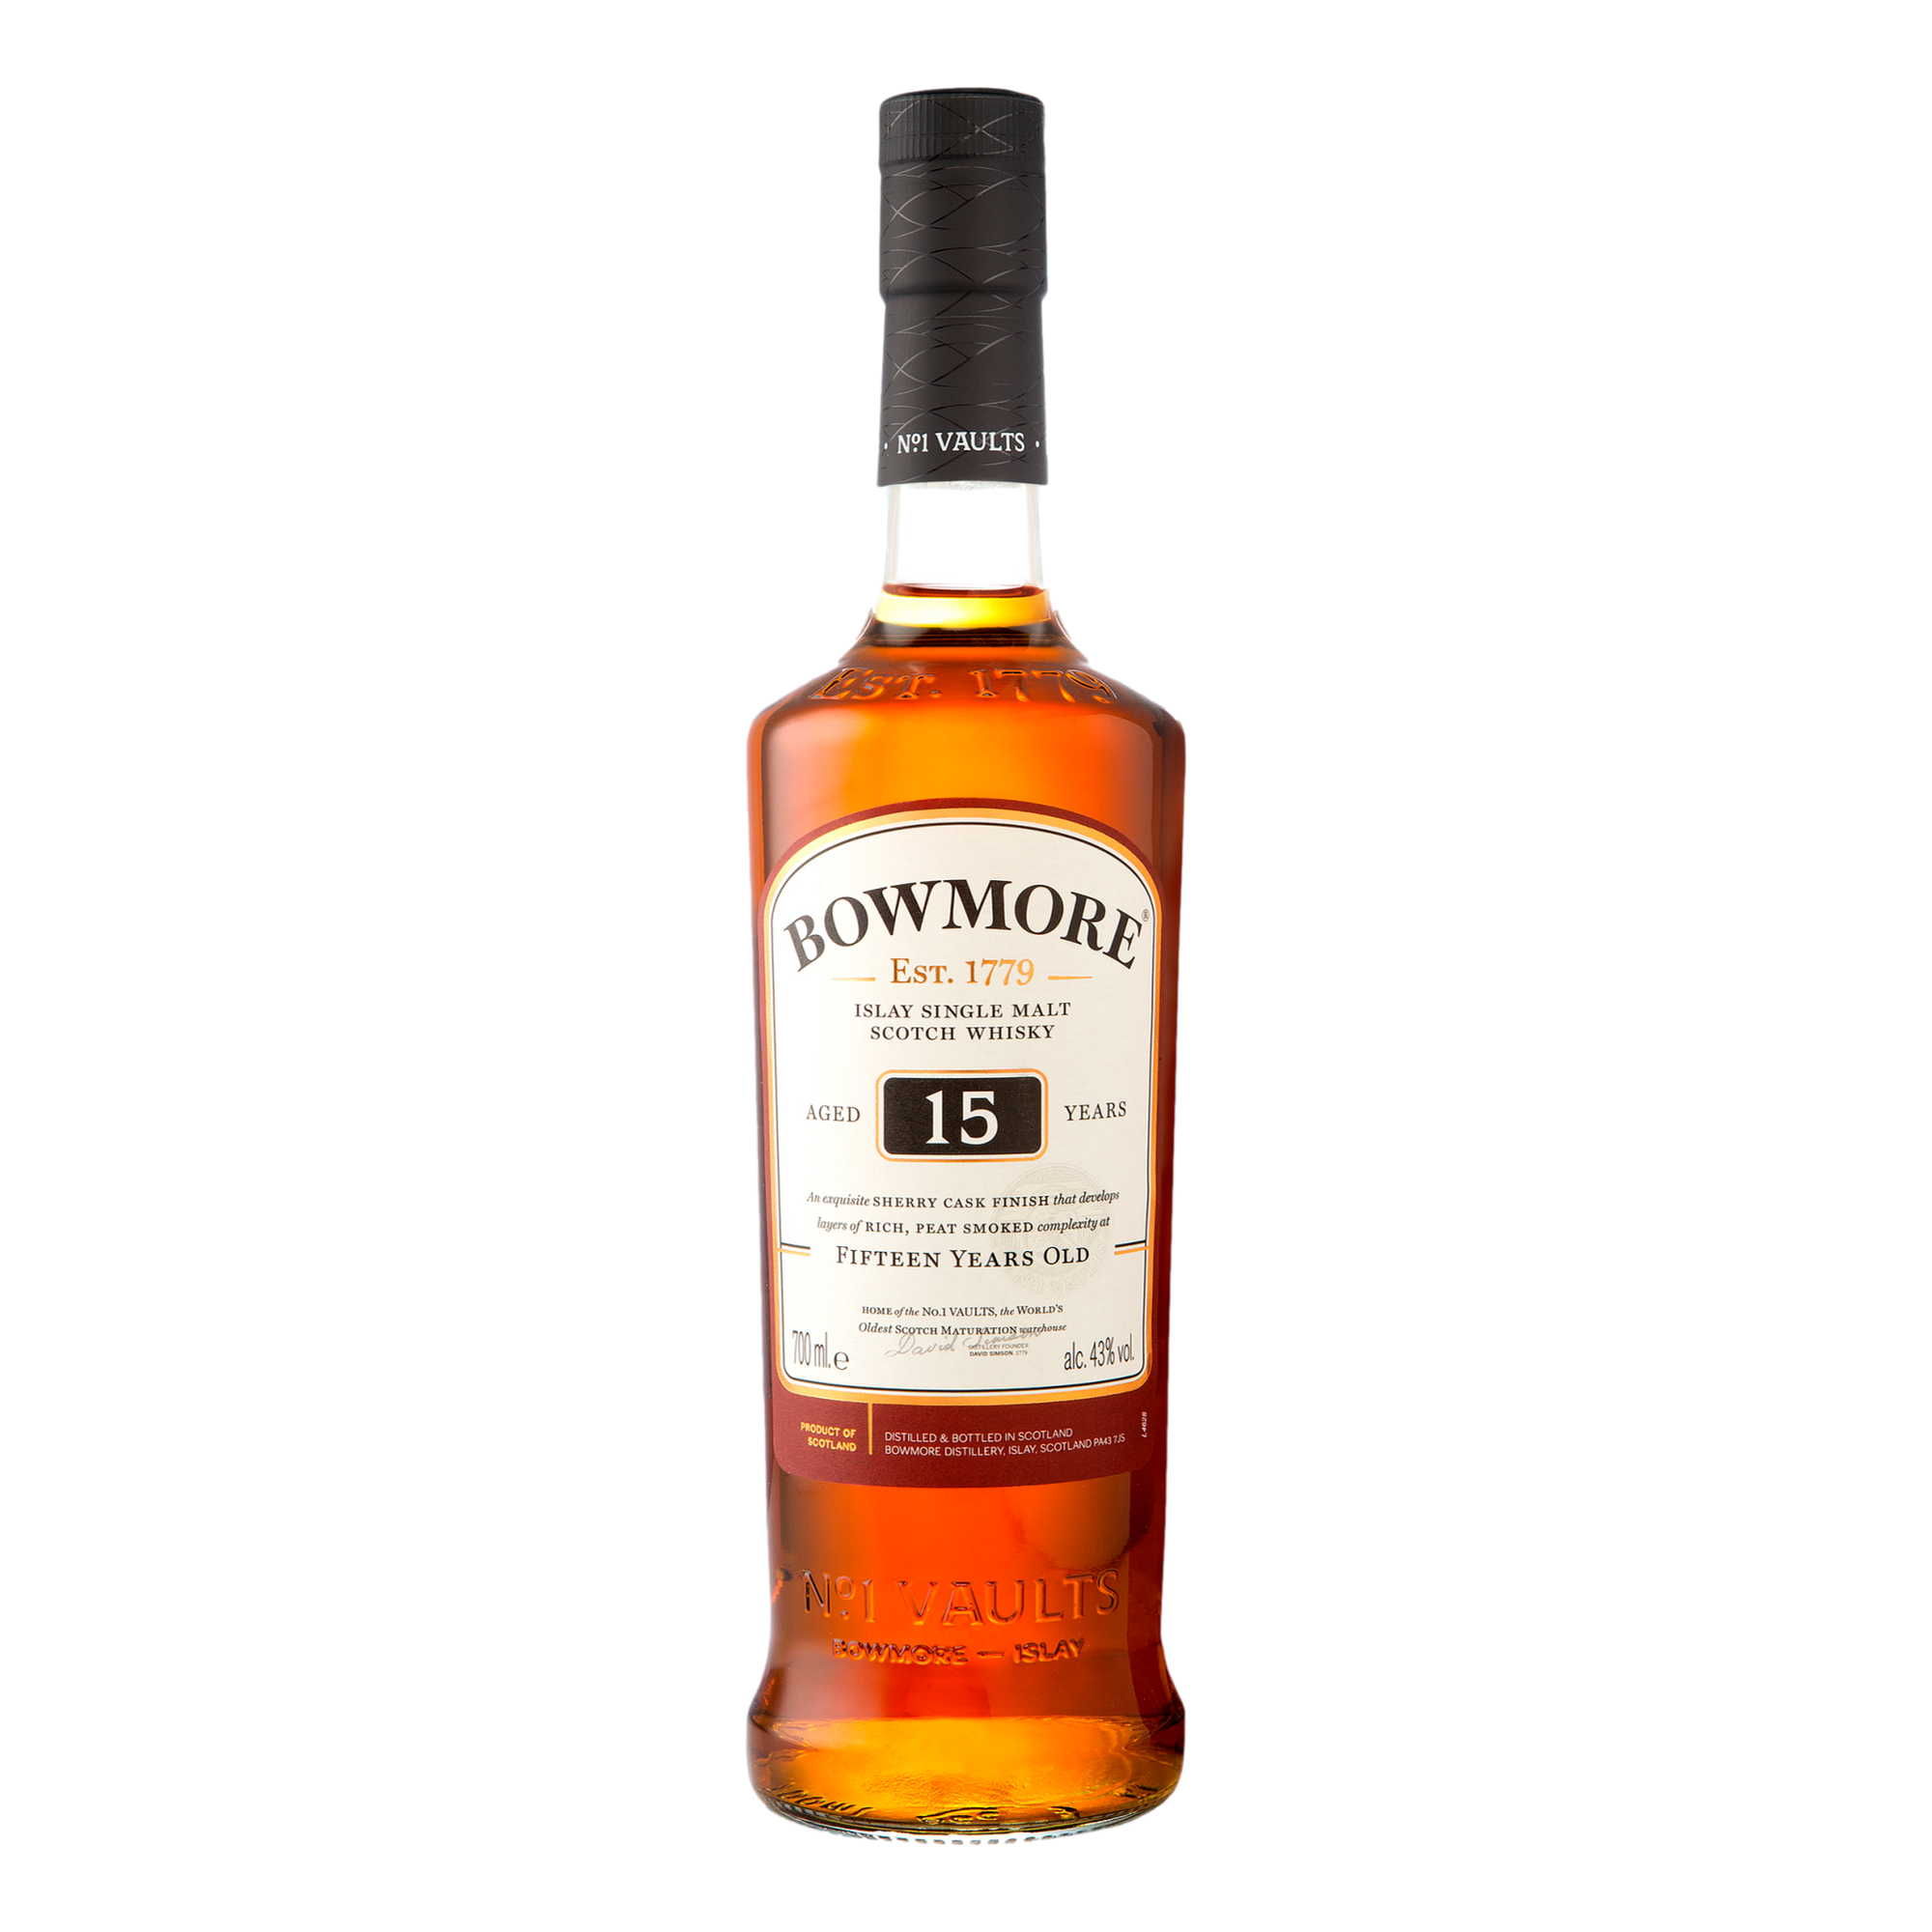 Bowmore Single Malt Old Scotch Whisky 15YO 700ml